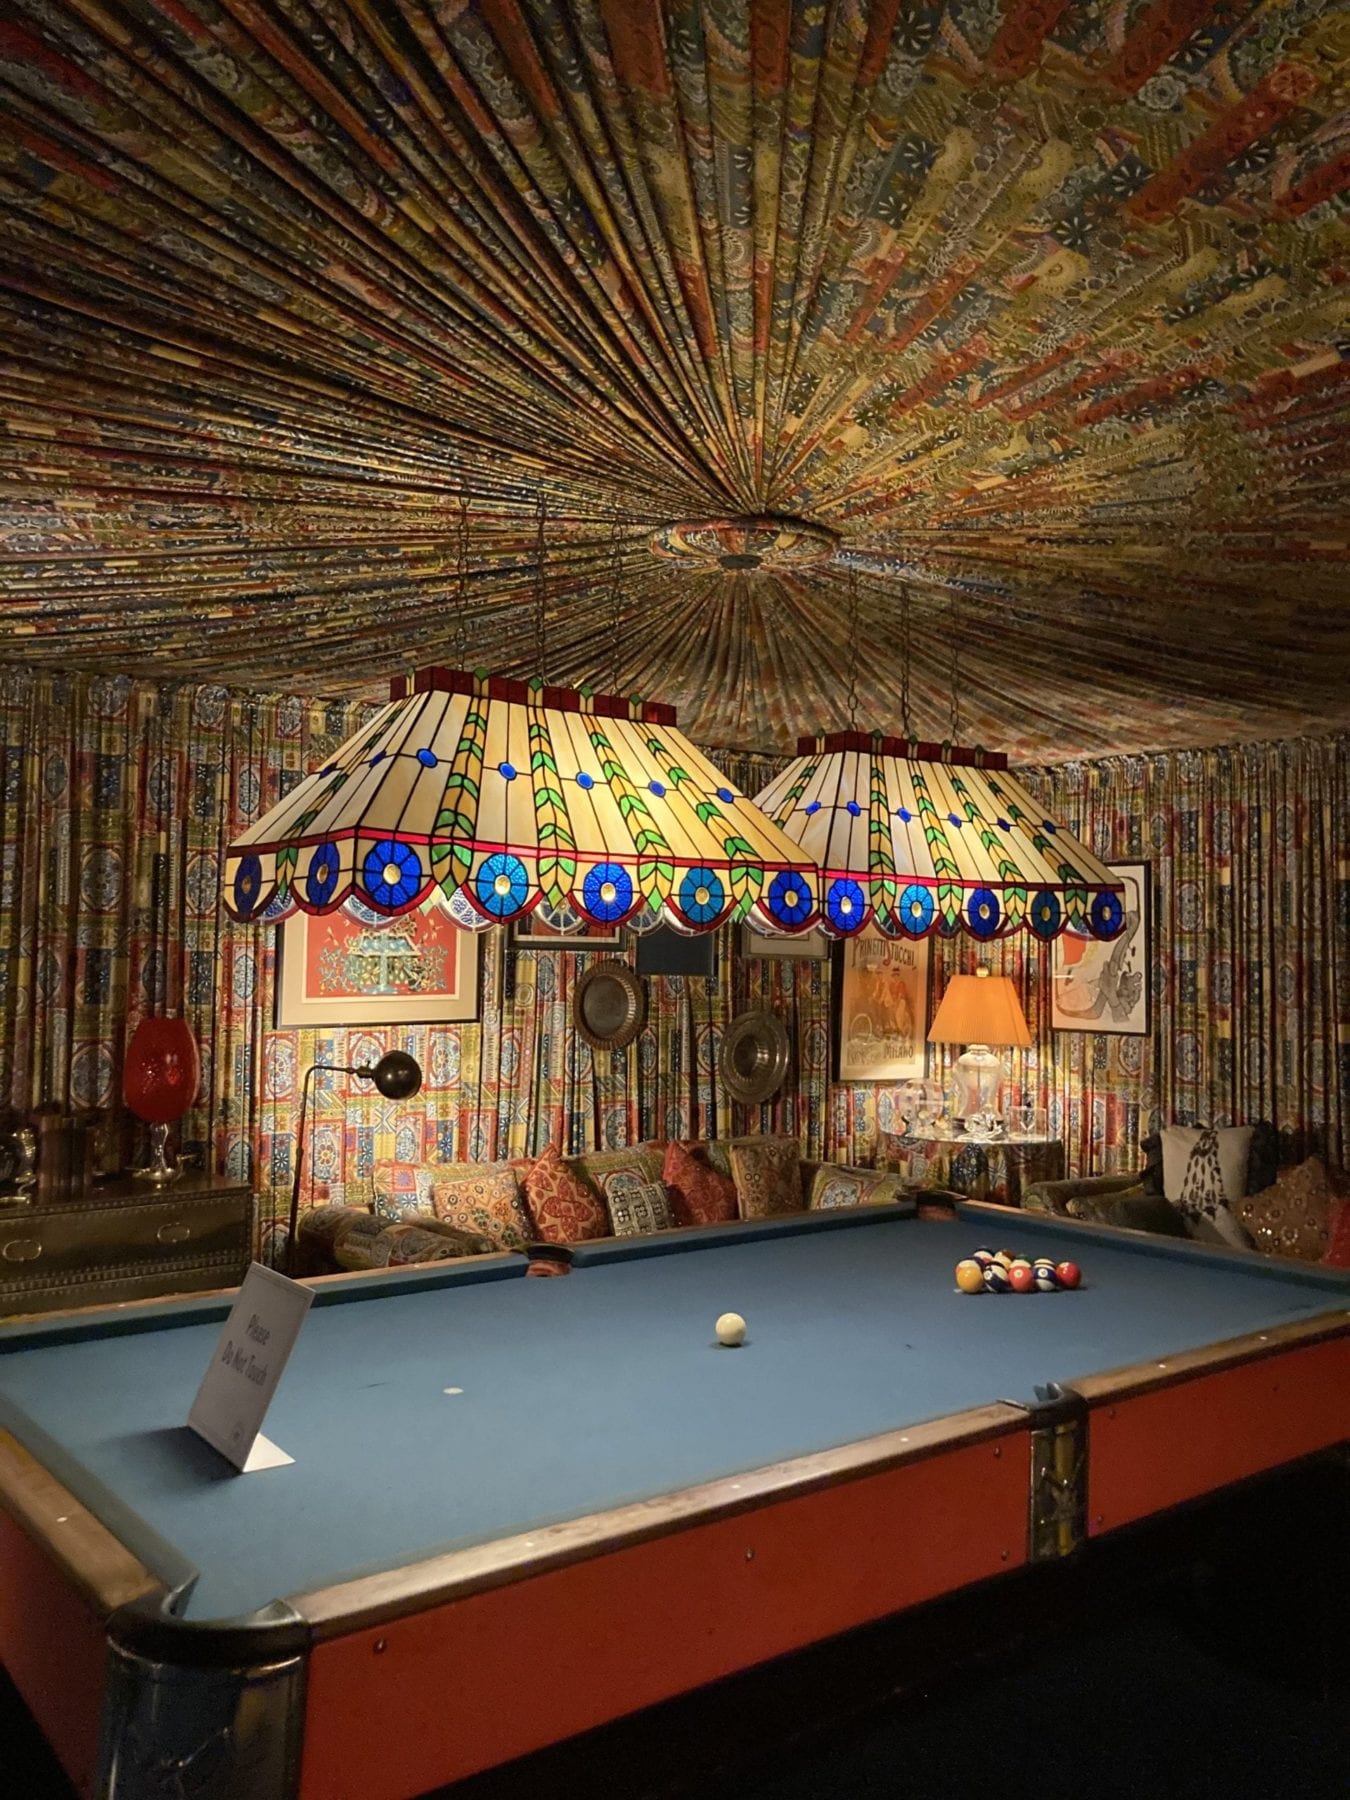 Billiards room at Graceland